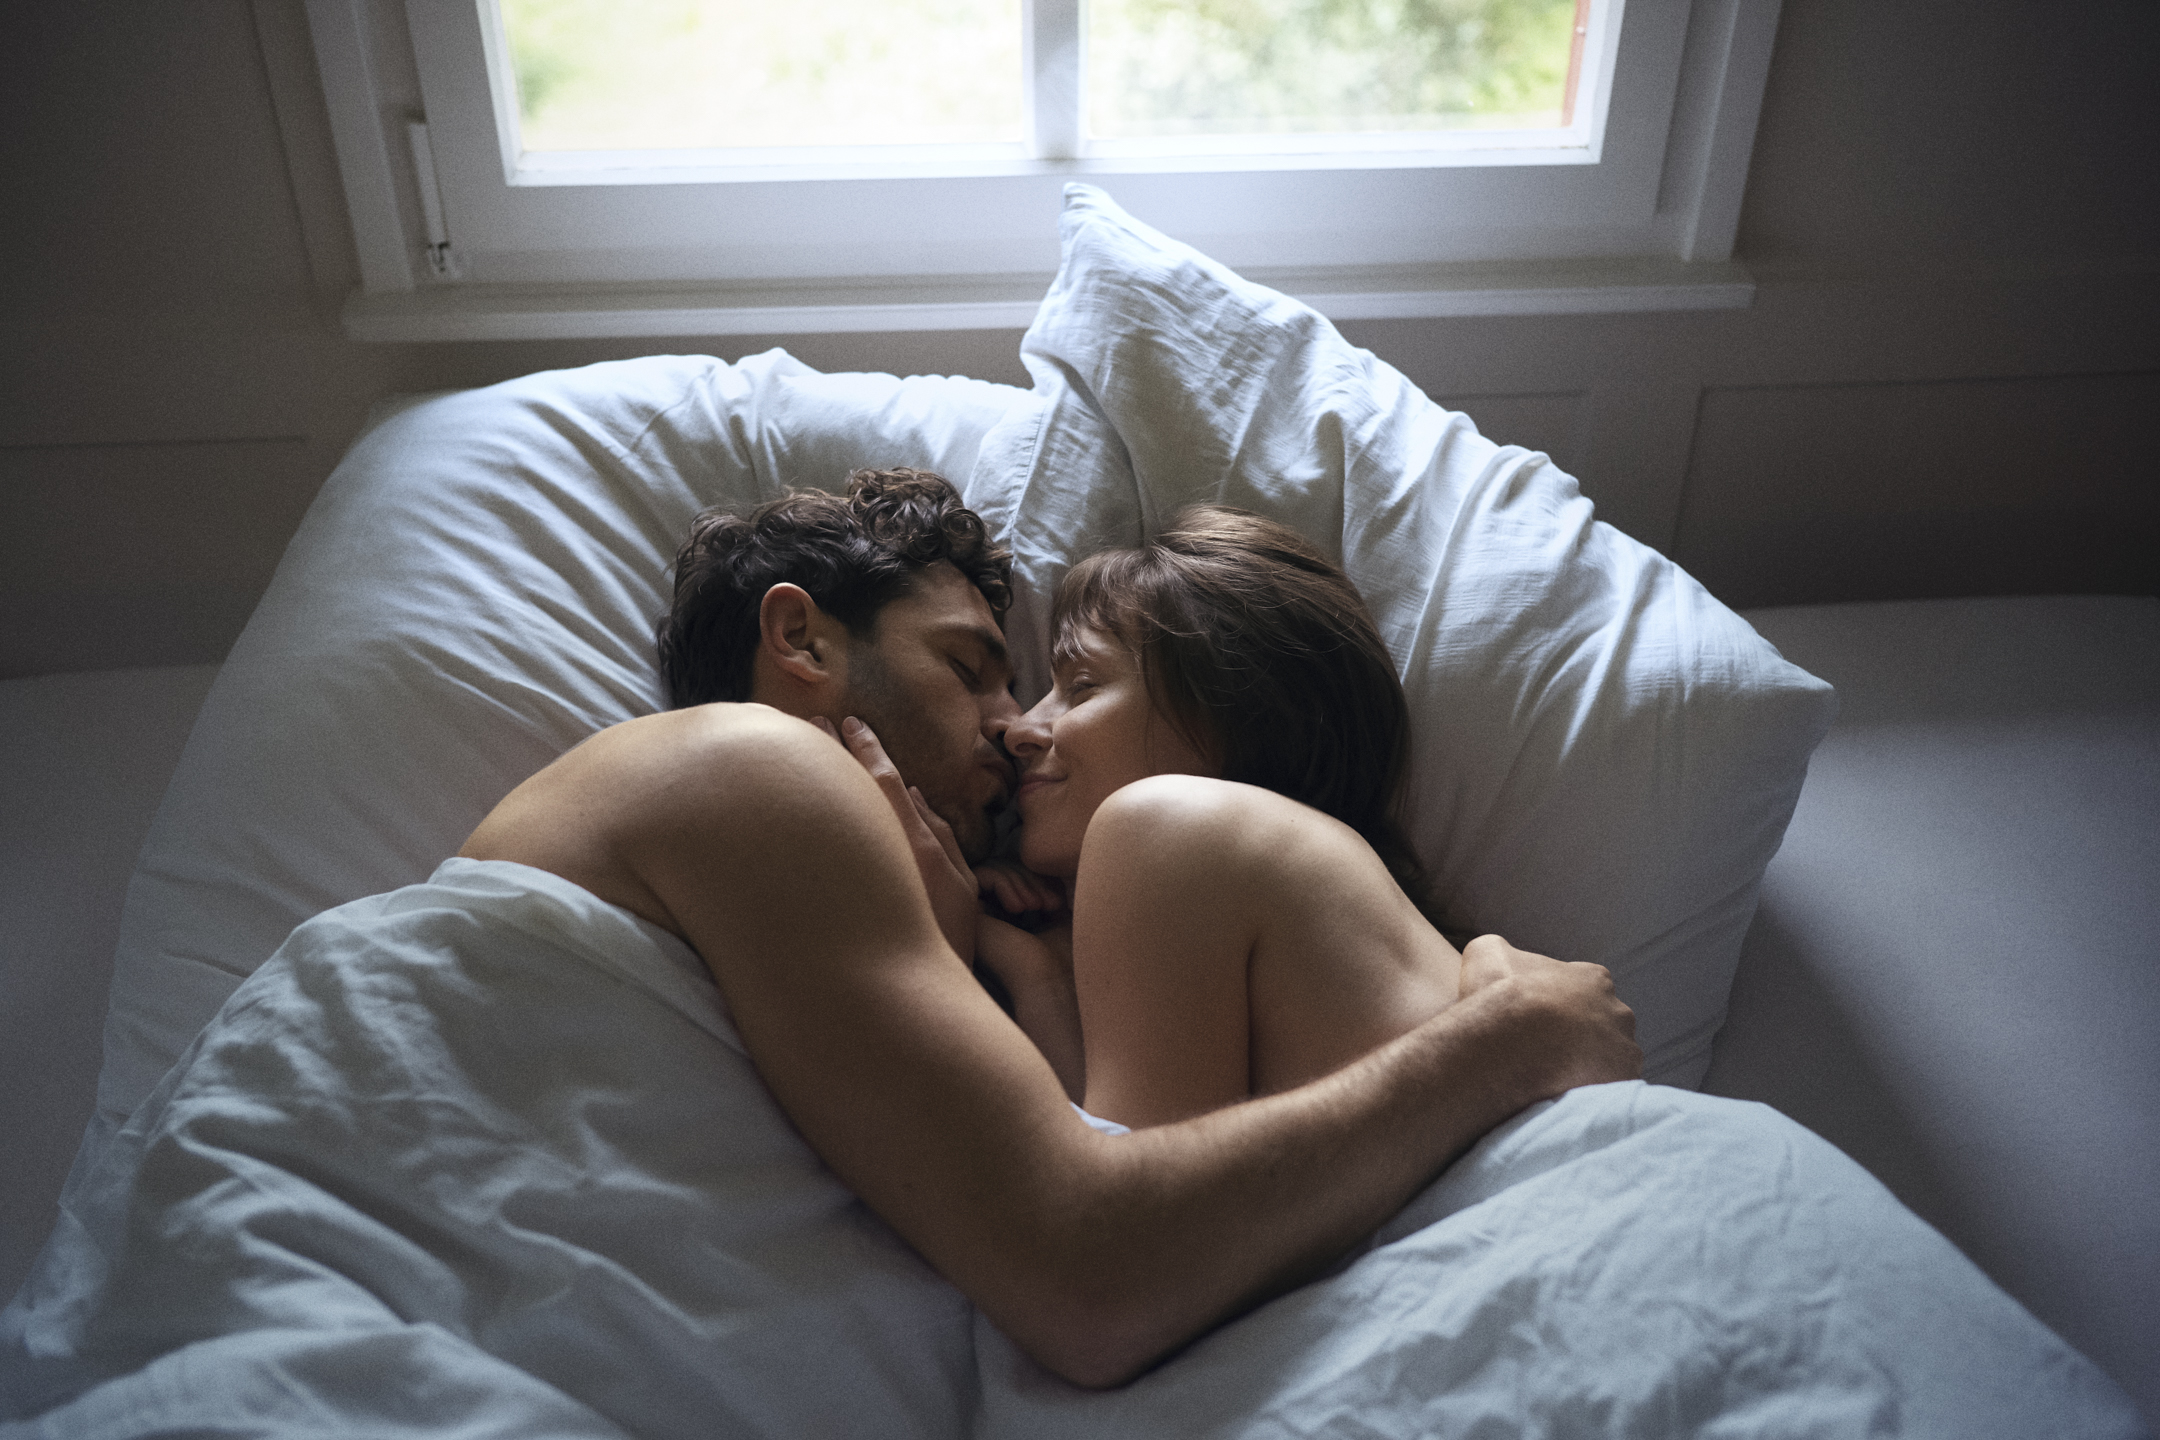 Порно Спящий На Одной Кровати